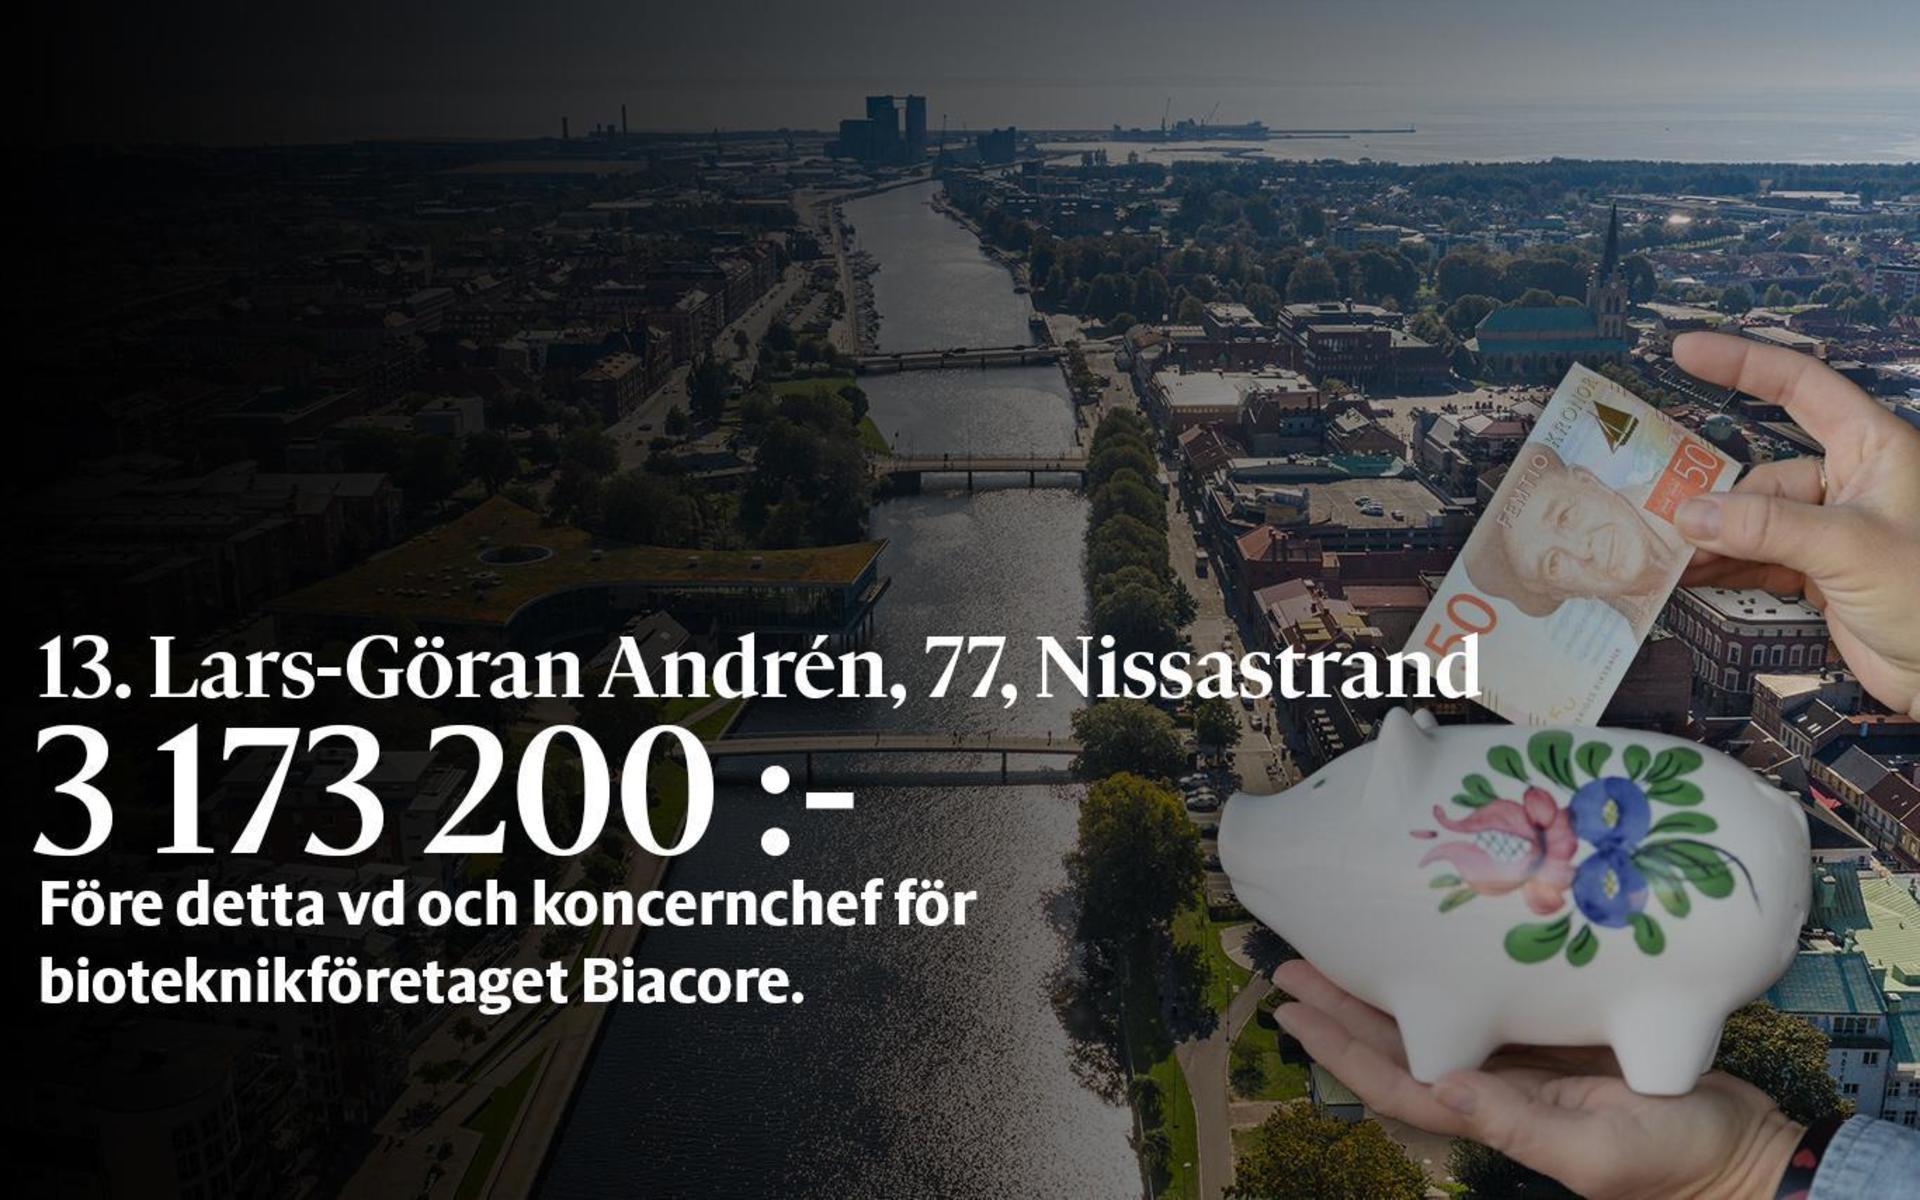 13. Lars-Göran Andrén, fastställd förvärvsinkomst på 3 173 200 kronor och inkomst av kapital på 707 643 kronor placerar honom på plats 71 i den totala inkomstligan i Halmstad.